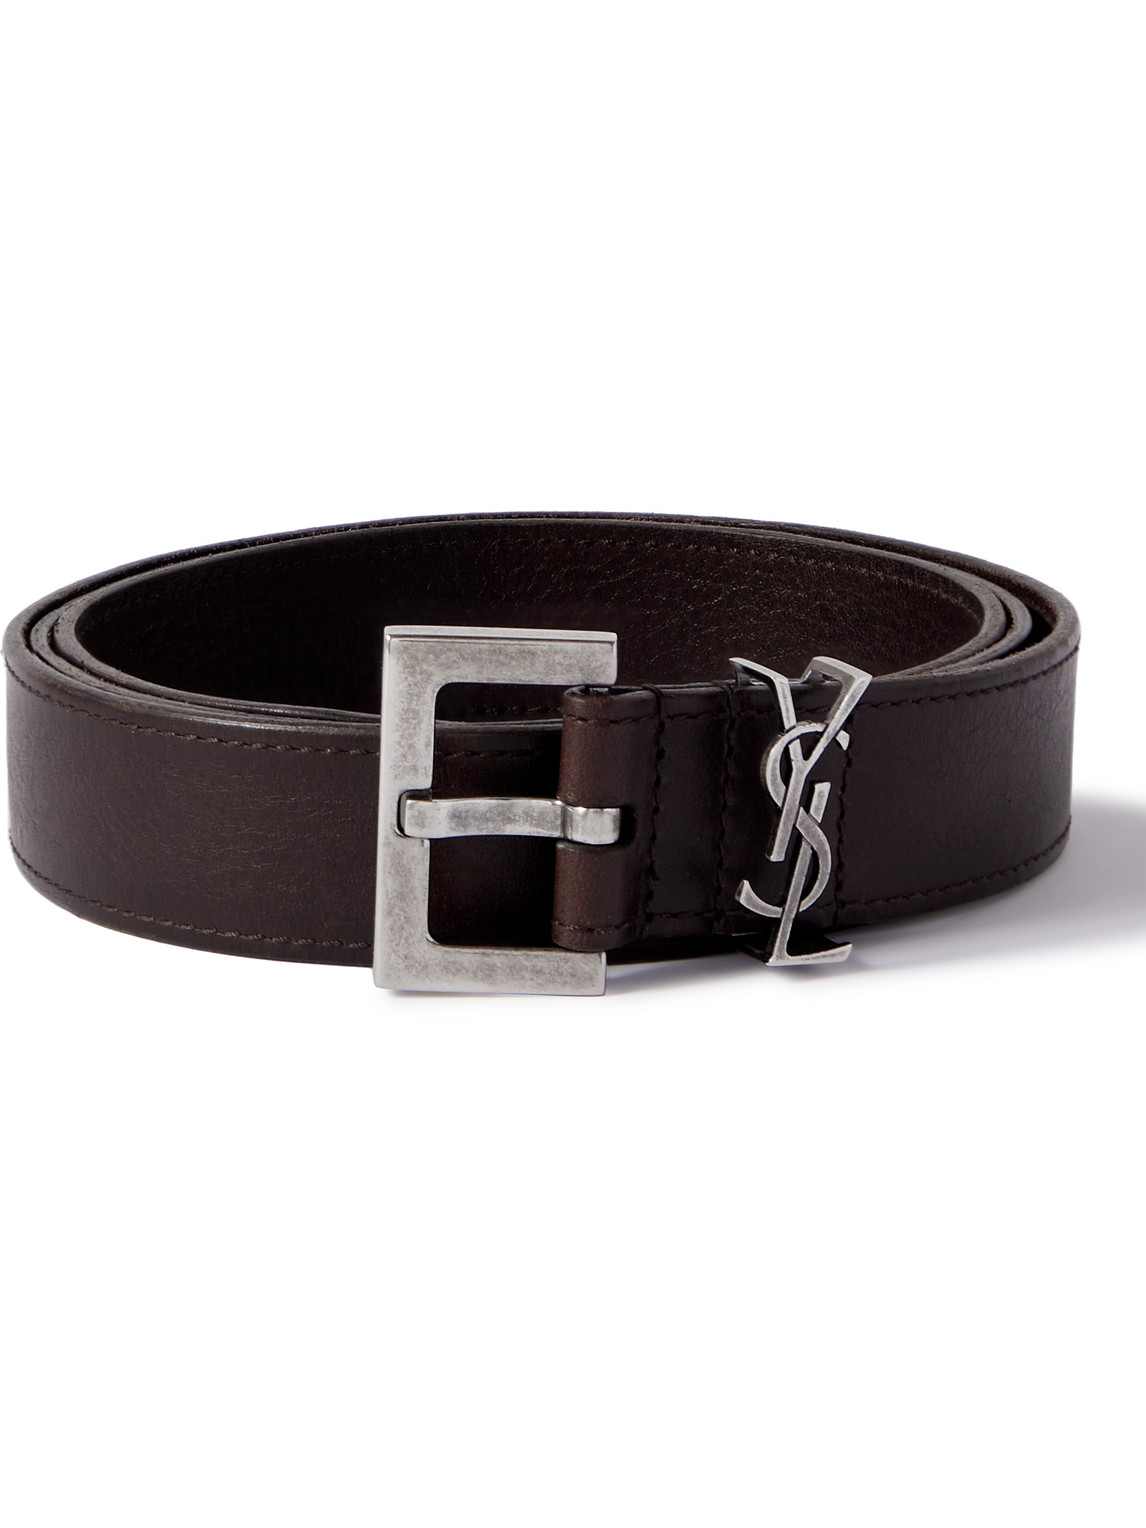 SAINT LAURENT - 3cm Leather Belt - Men - Brown - EU 105 von SAINT LAURENT